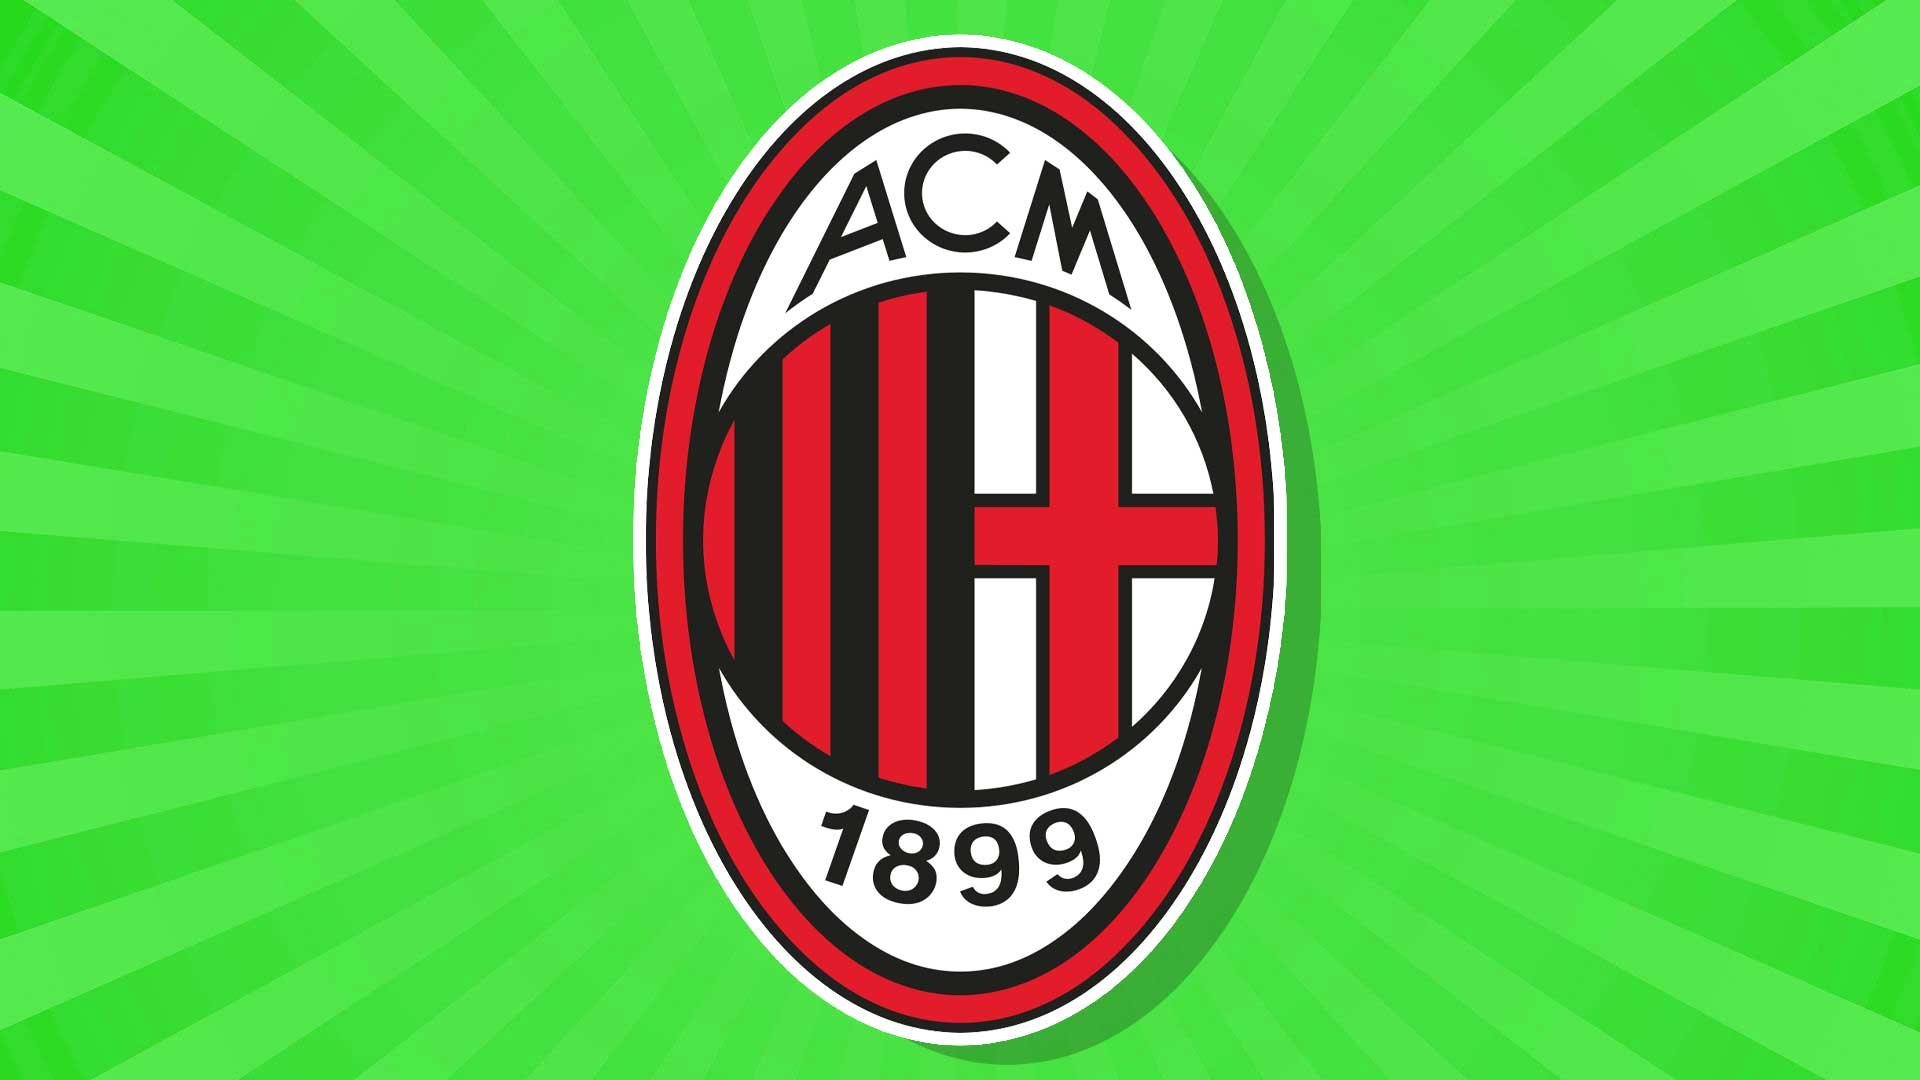 AC Milan football badge